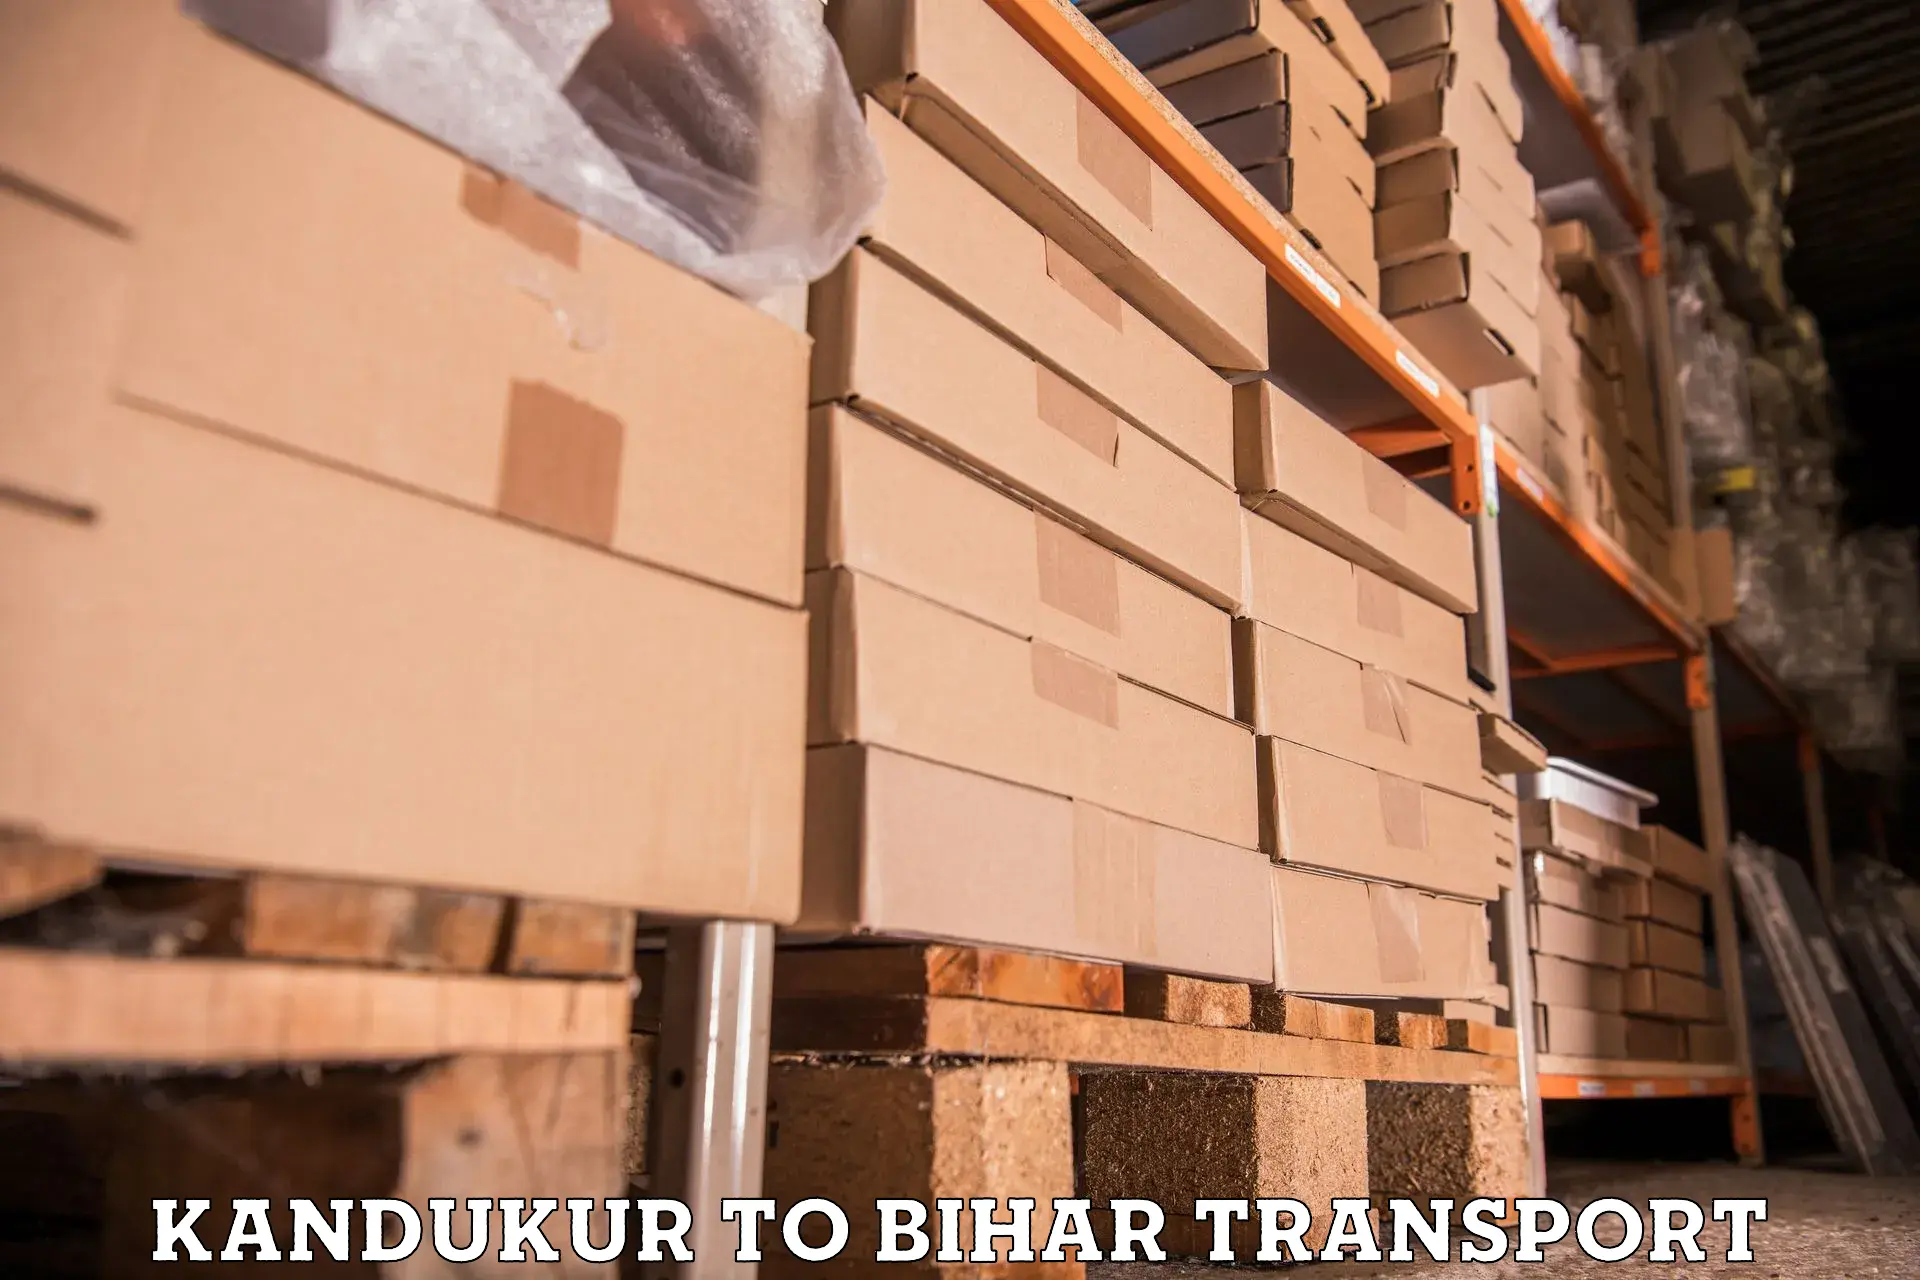 Lorry transport service Kandukur to Sikandara Jamui